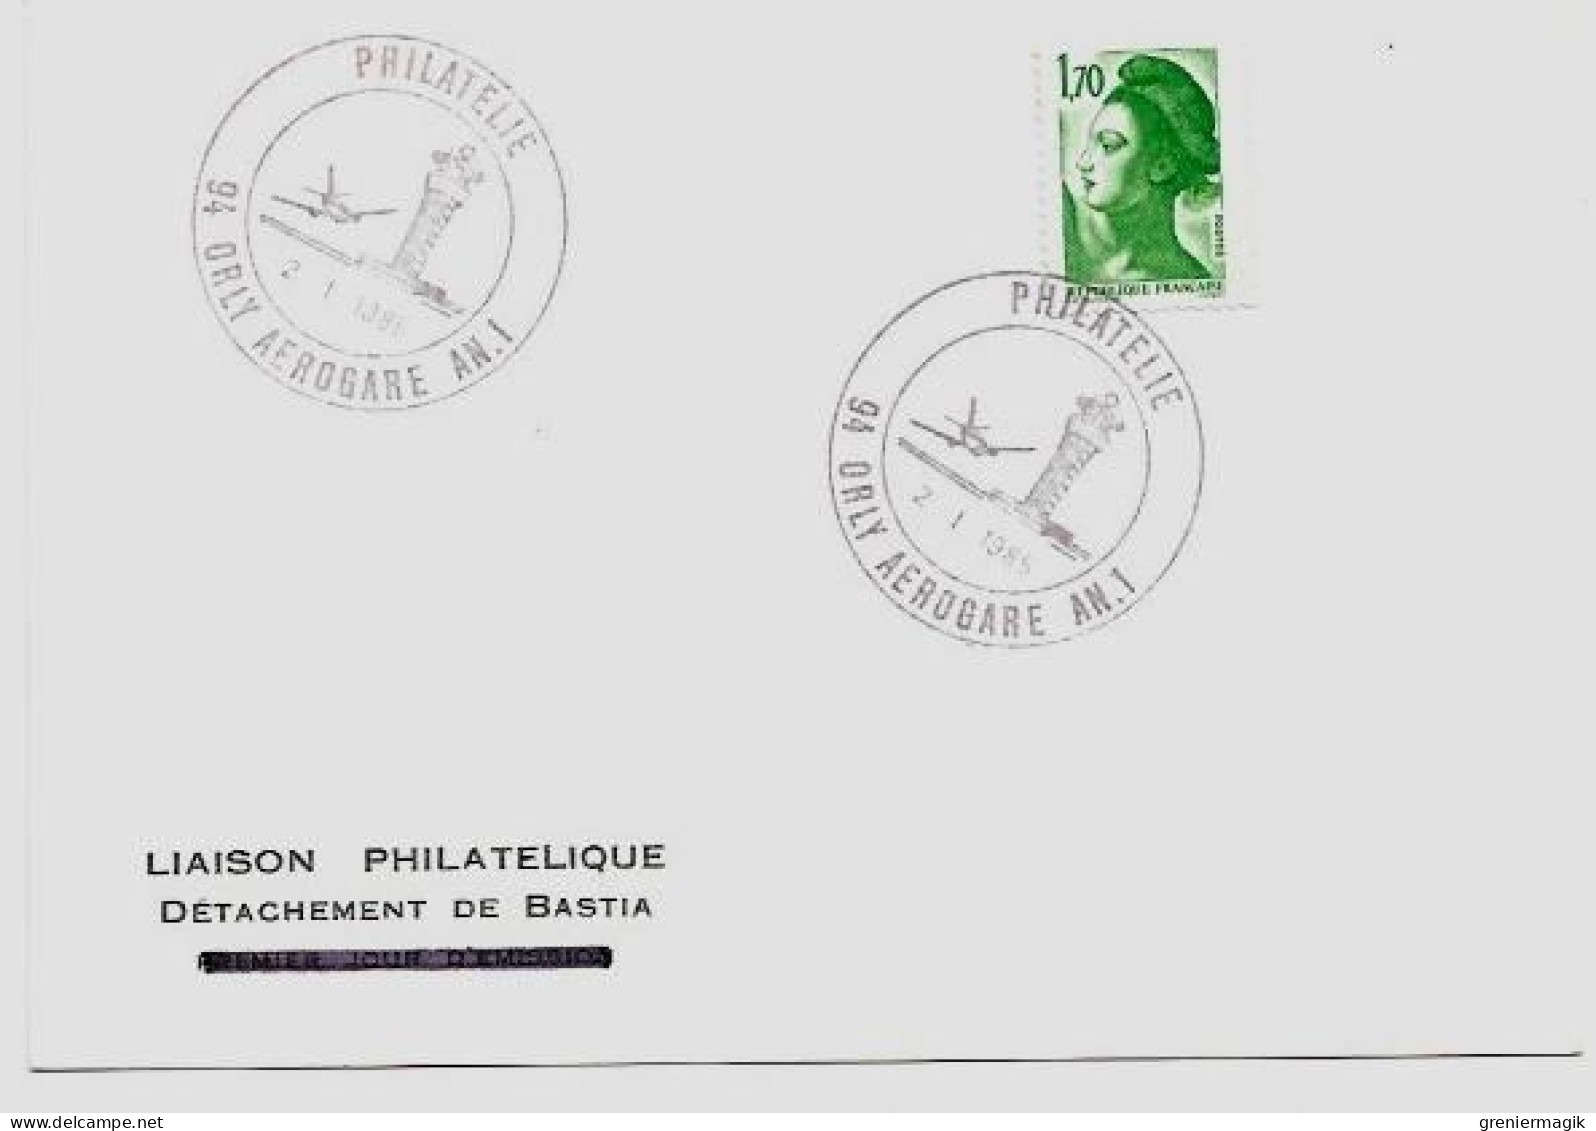 N°2318 Cachet Philatélie Orly Aérogare AN. 1 2/1/1985 (Tour De Contrôle) - Liaison Philatélique Bastia Liberté 1,70 Vert - Tijdelijke Stempels